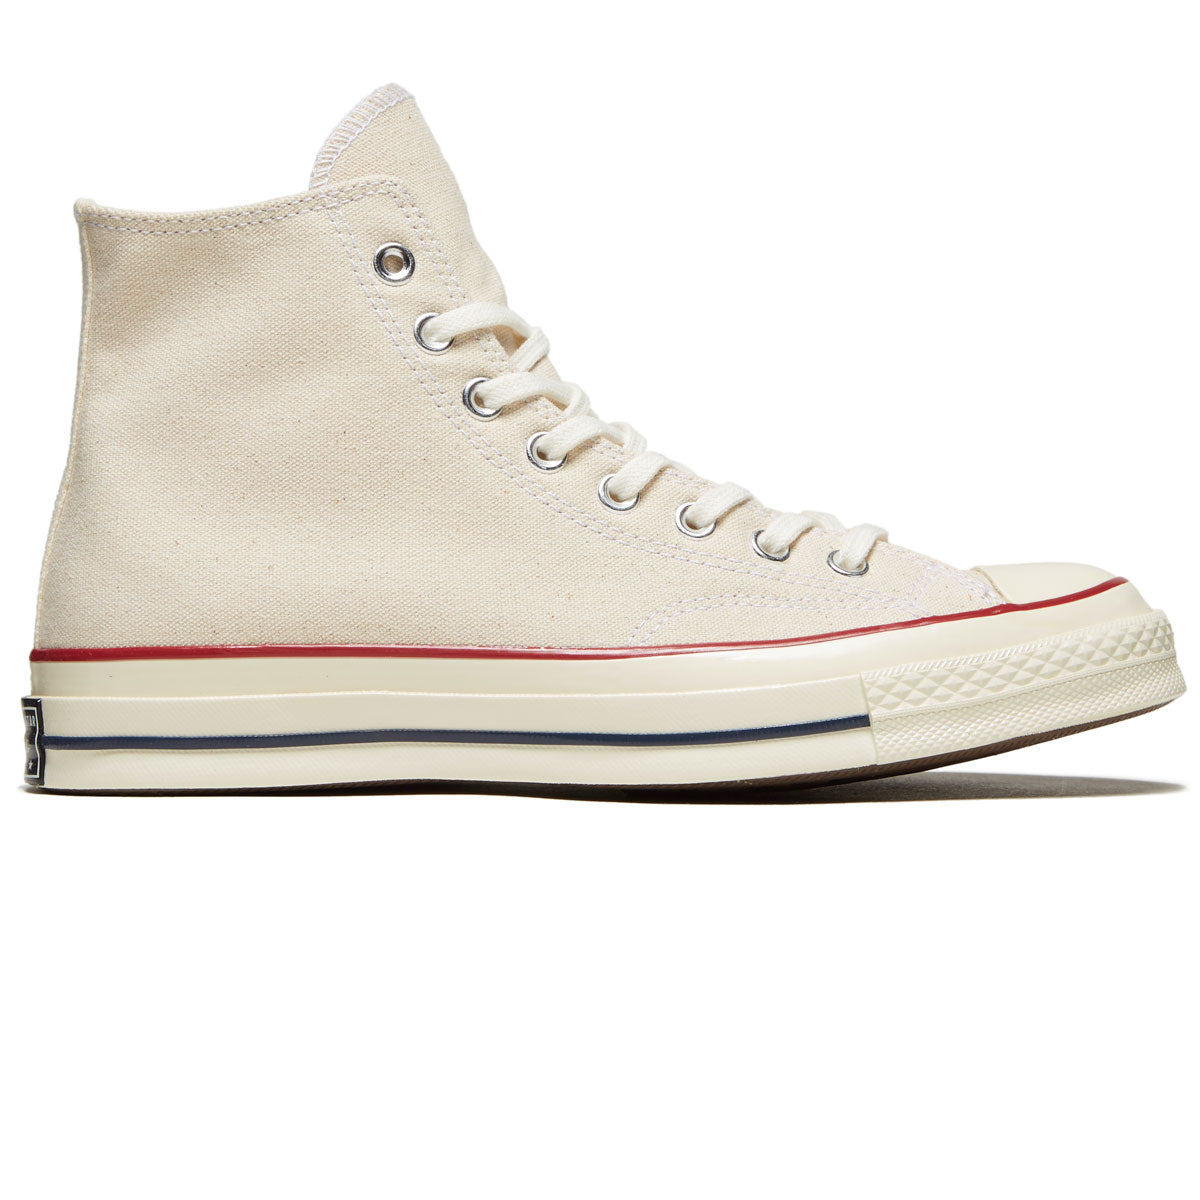 Converse Chuck 70 Hi Shoes - Parchment/Garnet/Egret image 1